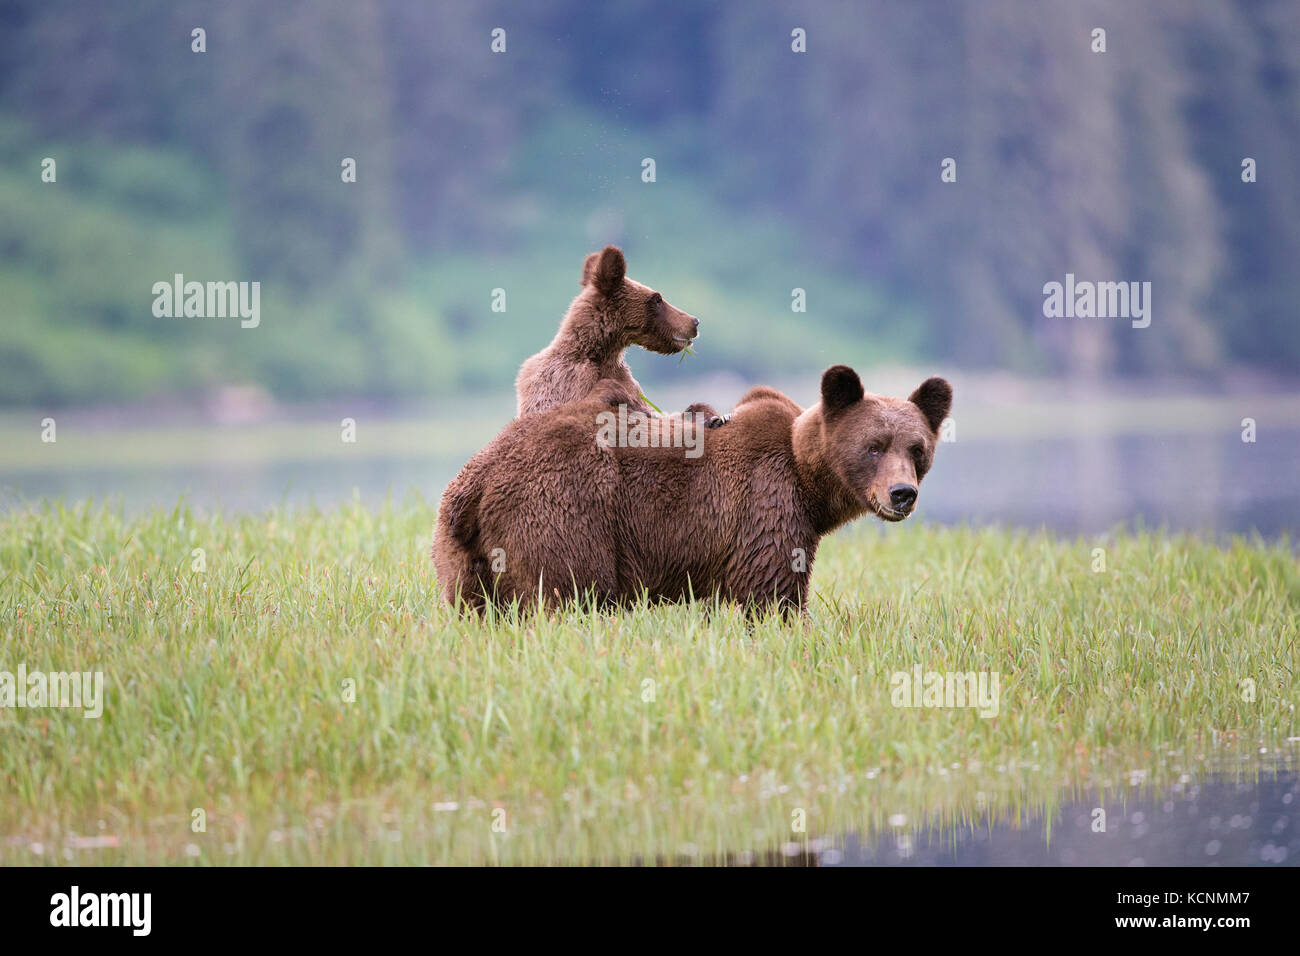 Grizzly Bear (Ursus arctos), Weibliche horriblis, essen Lyngbye's Segge (Carex lyngbyei) und jährling Cub mit Pfoten auf den Rücken, das khutzeymateen Grizzly Bär Heiligtum, British Columbia, Kanada. Stockfoto